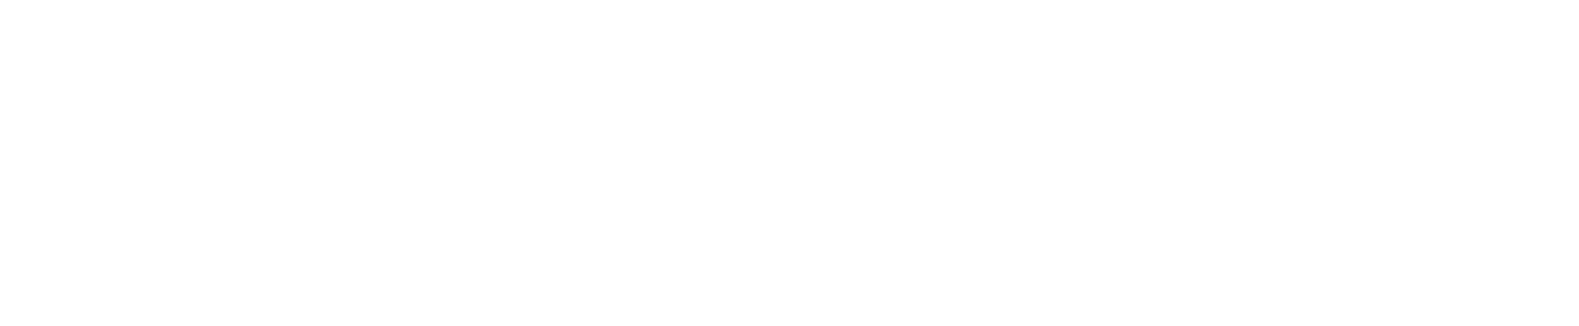 Everest Group logo grand pour les fonds sombres (PNG transparent)